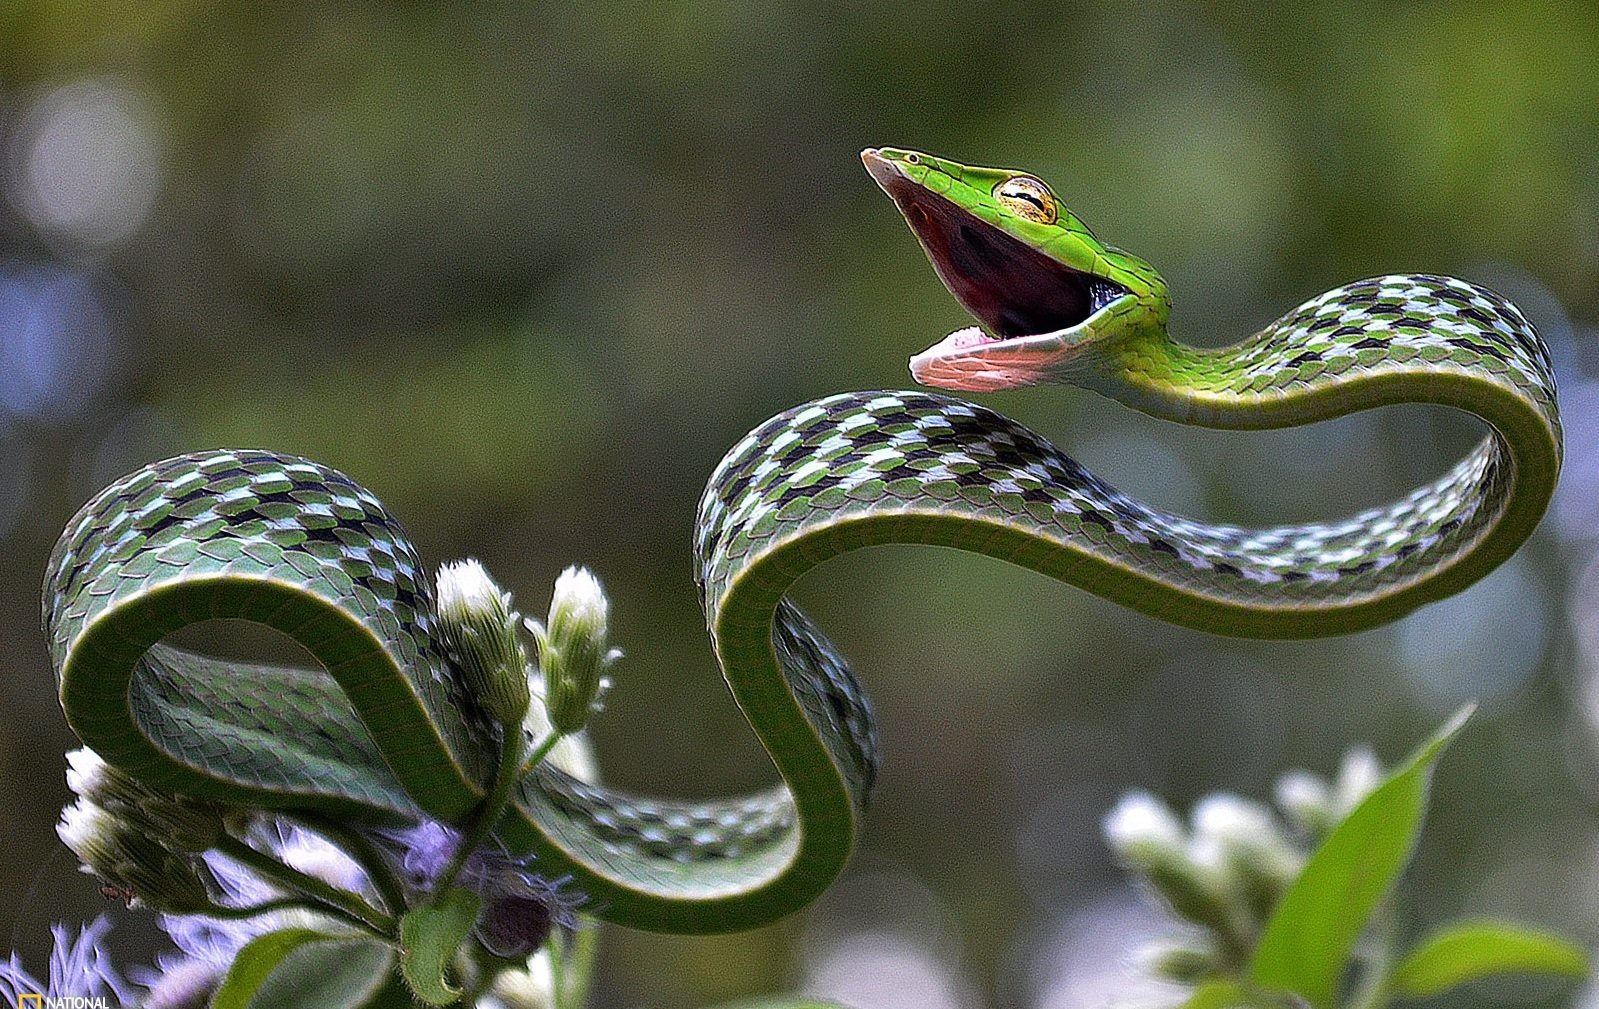 Украшенная змея. Длиннорылая плетевидка. Плетевидный полоз. Плетевидная зеленая змея. Виноградная змея (длиннорылая плетевидка).